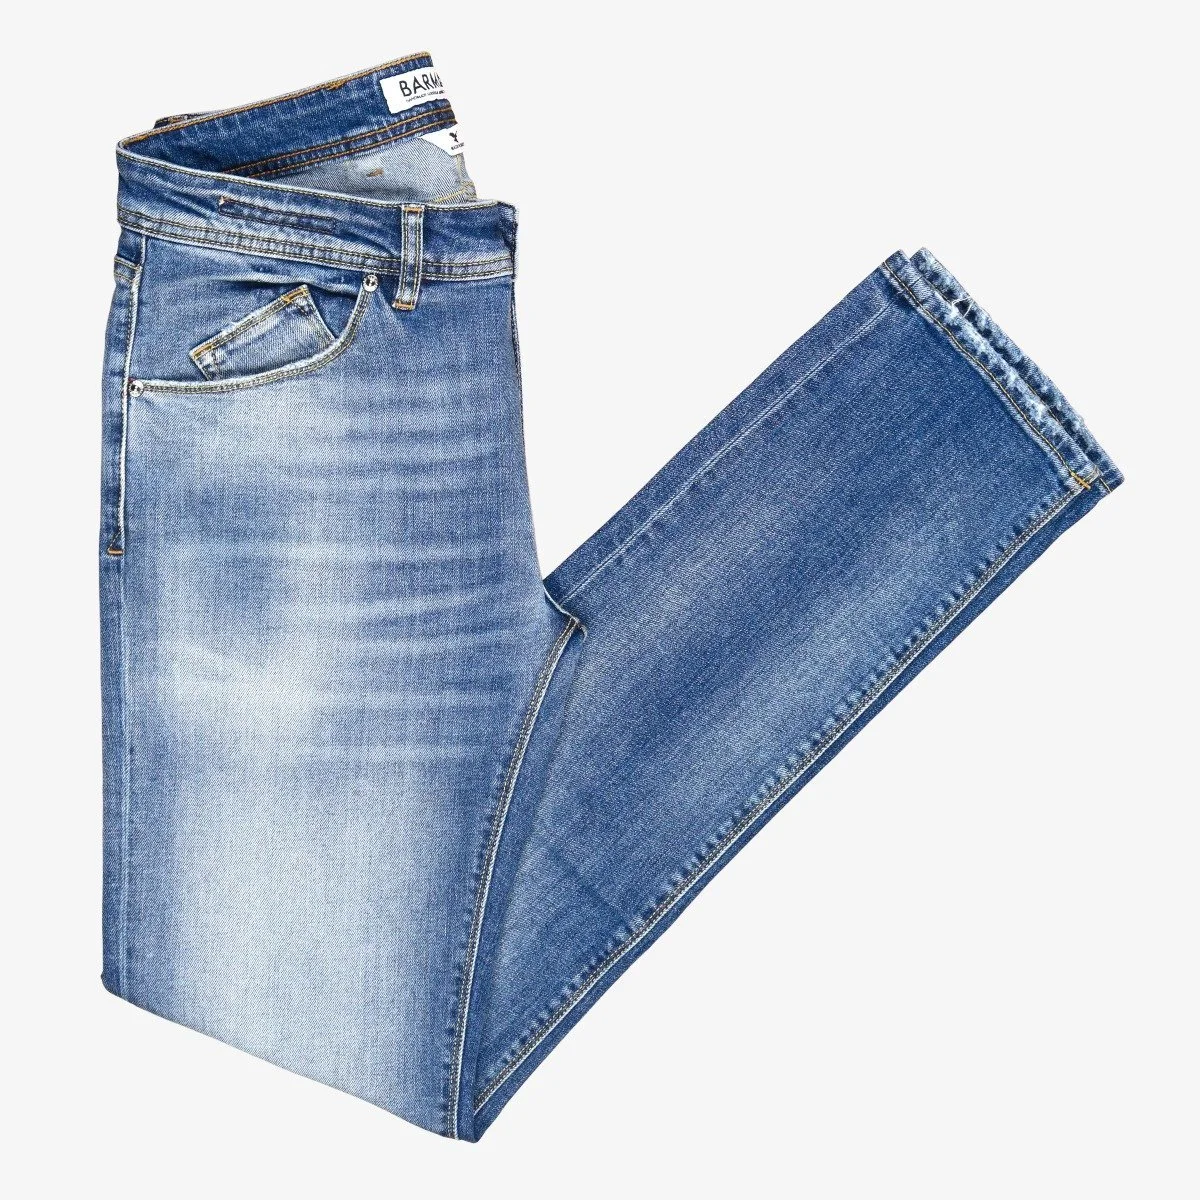 Barmas Dean light blue slim fit 11 oz. washed jeans